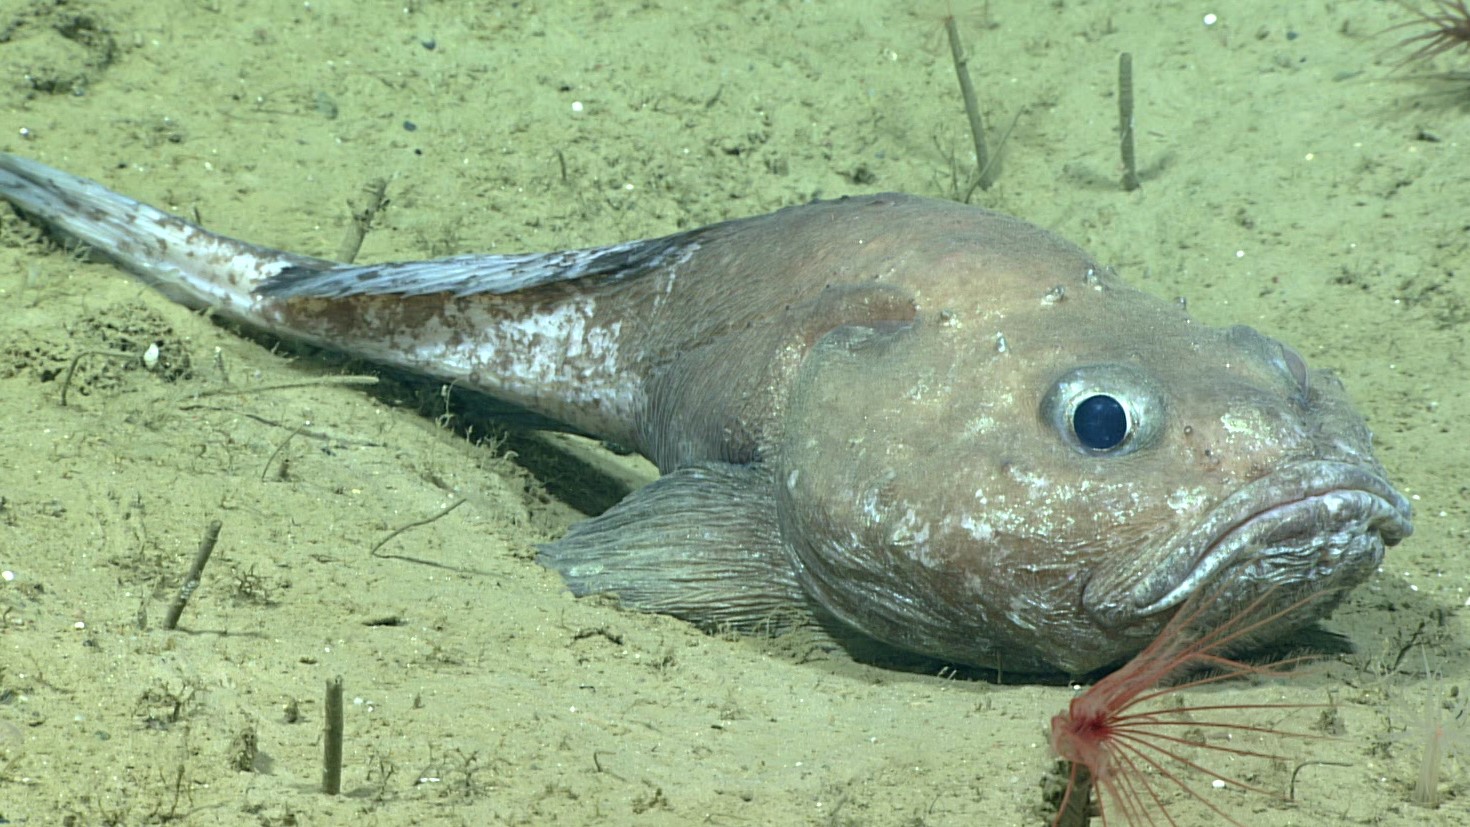 Un chabot velouté (Cottunculus sp.), un poisson de la même famille que le blobfish, se repose sur un fond de sédiments meubles.